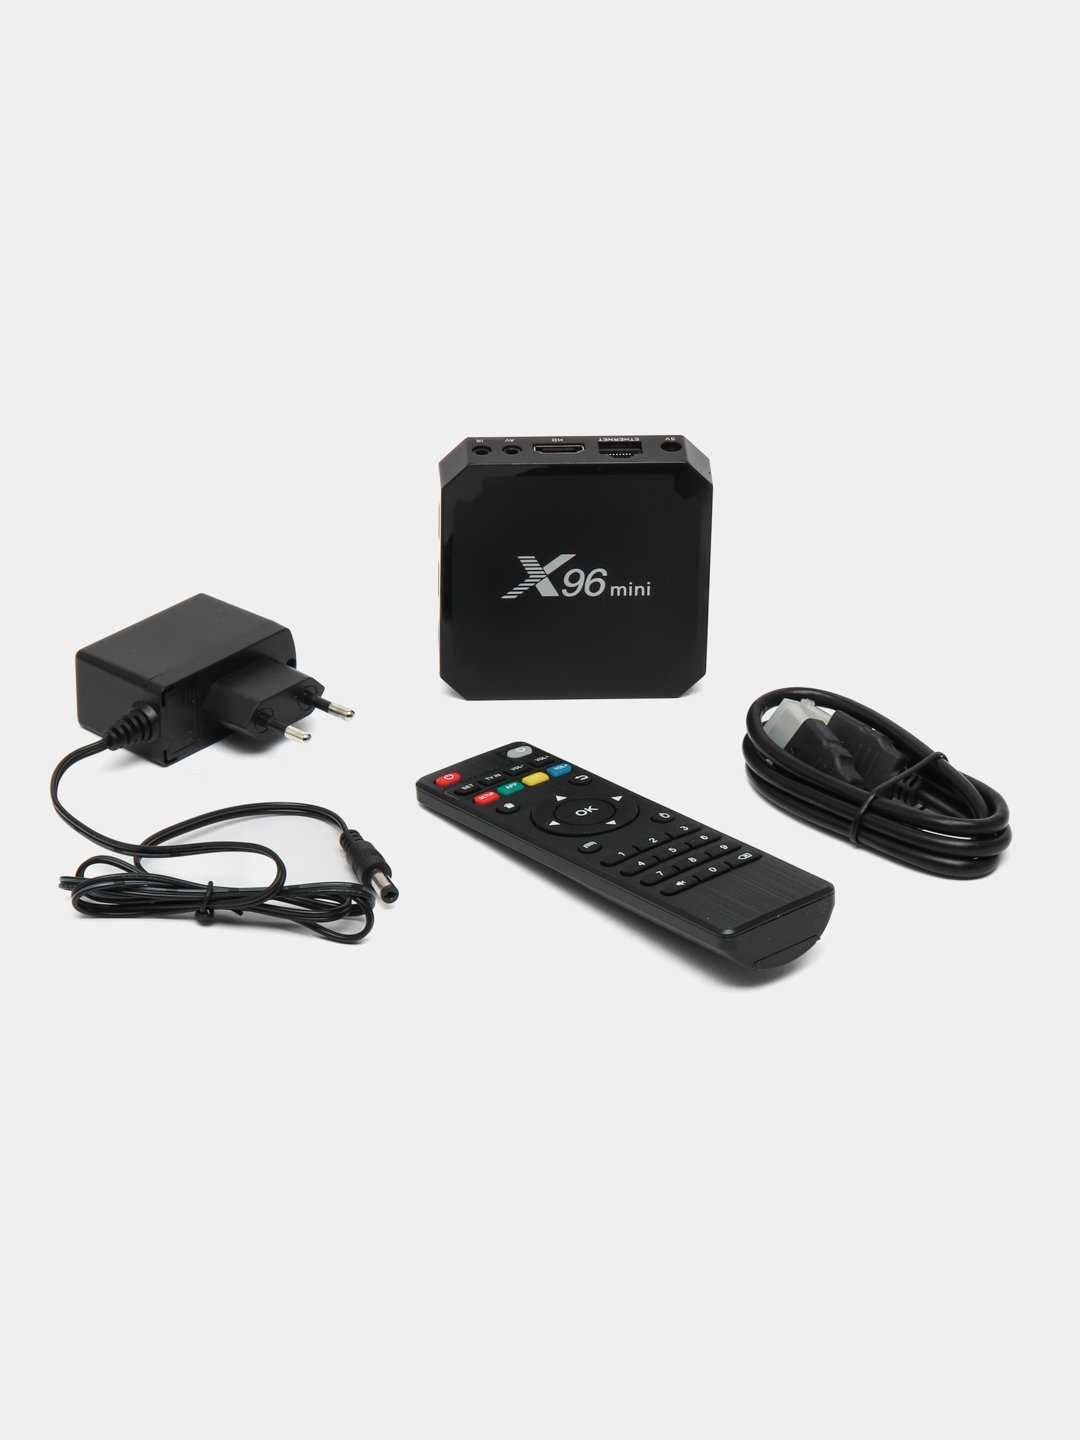 Smart-TV-Box Тюнер X96 mini